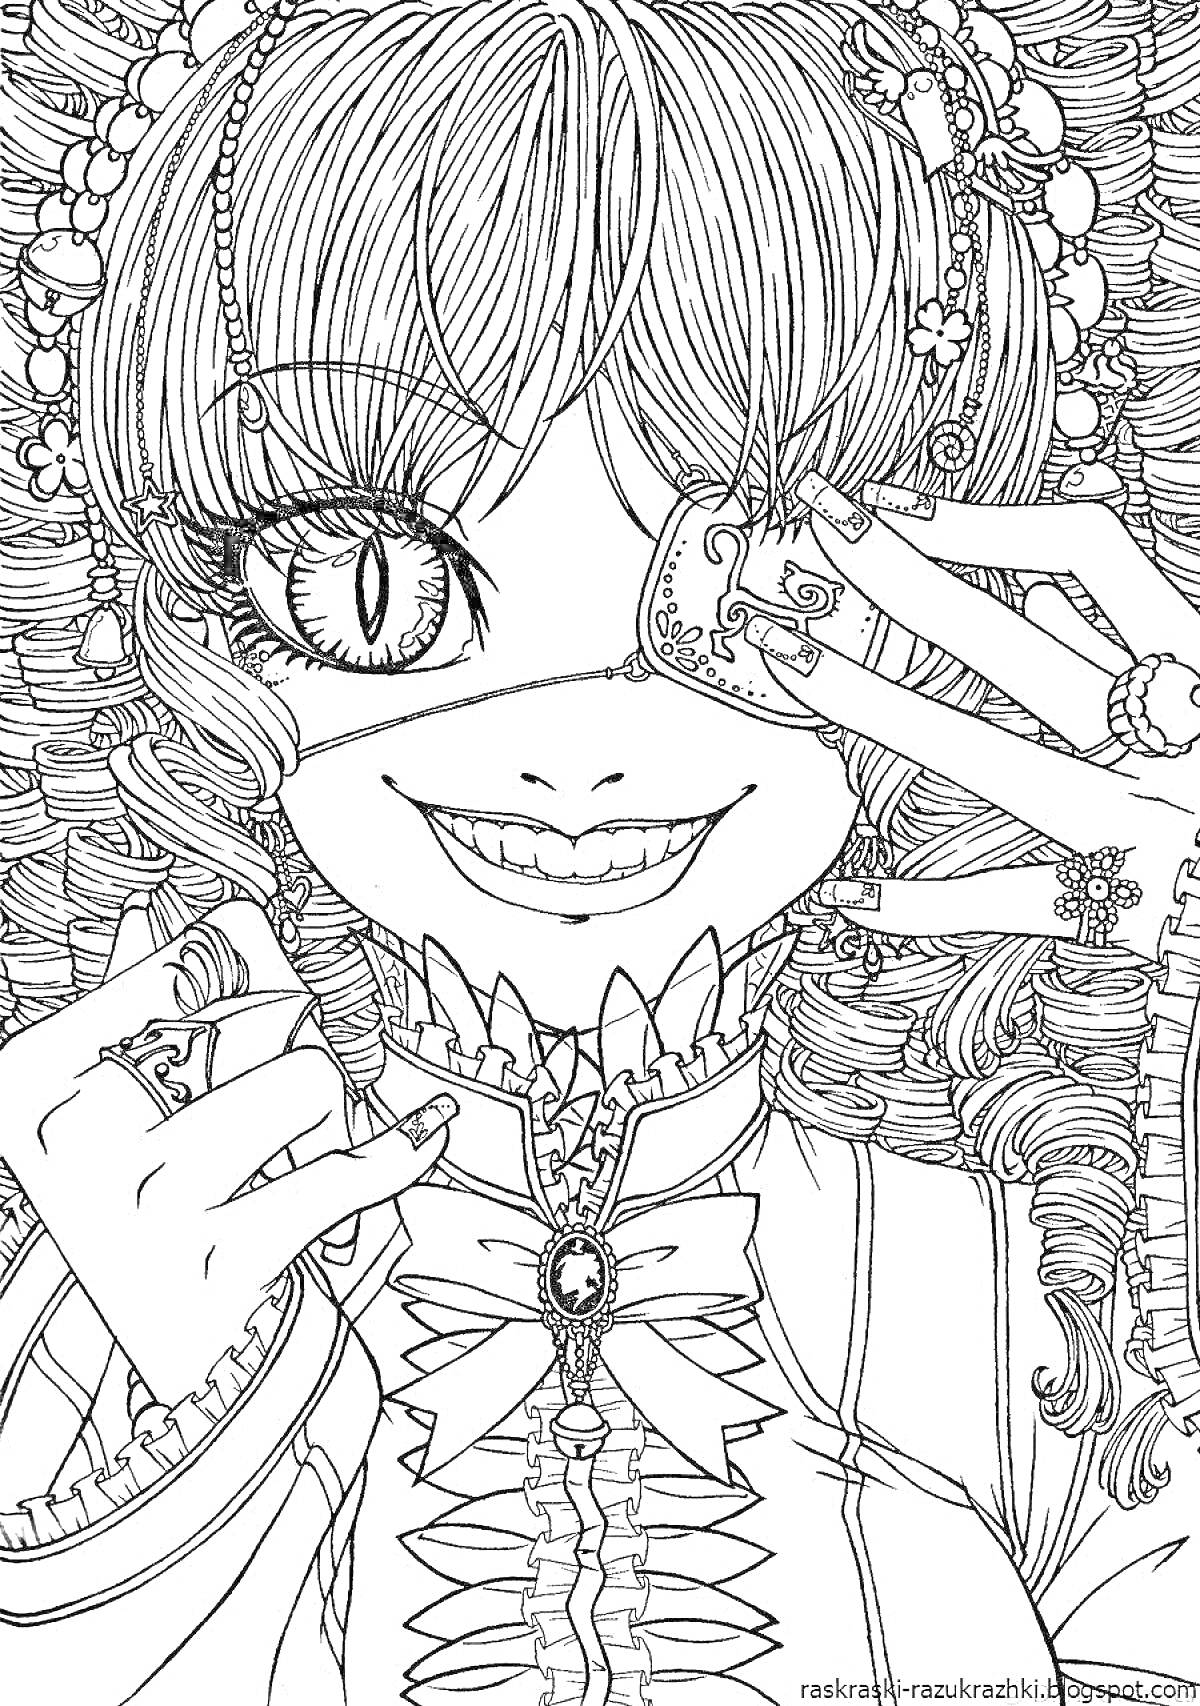 Раскраска Девушка с вьющимися волосами и аксессуарами, прикрывающая один глаз картой